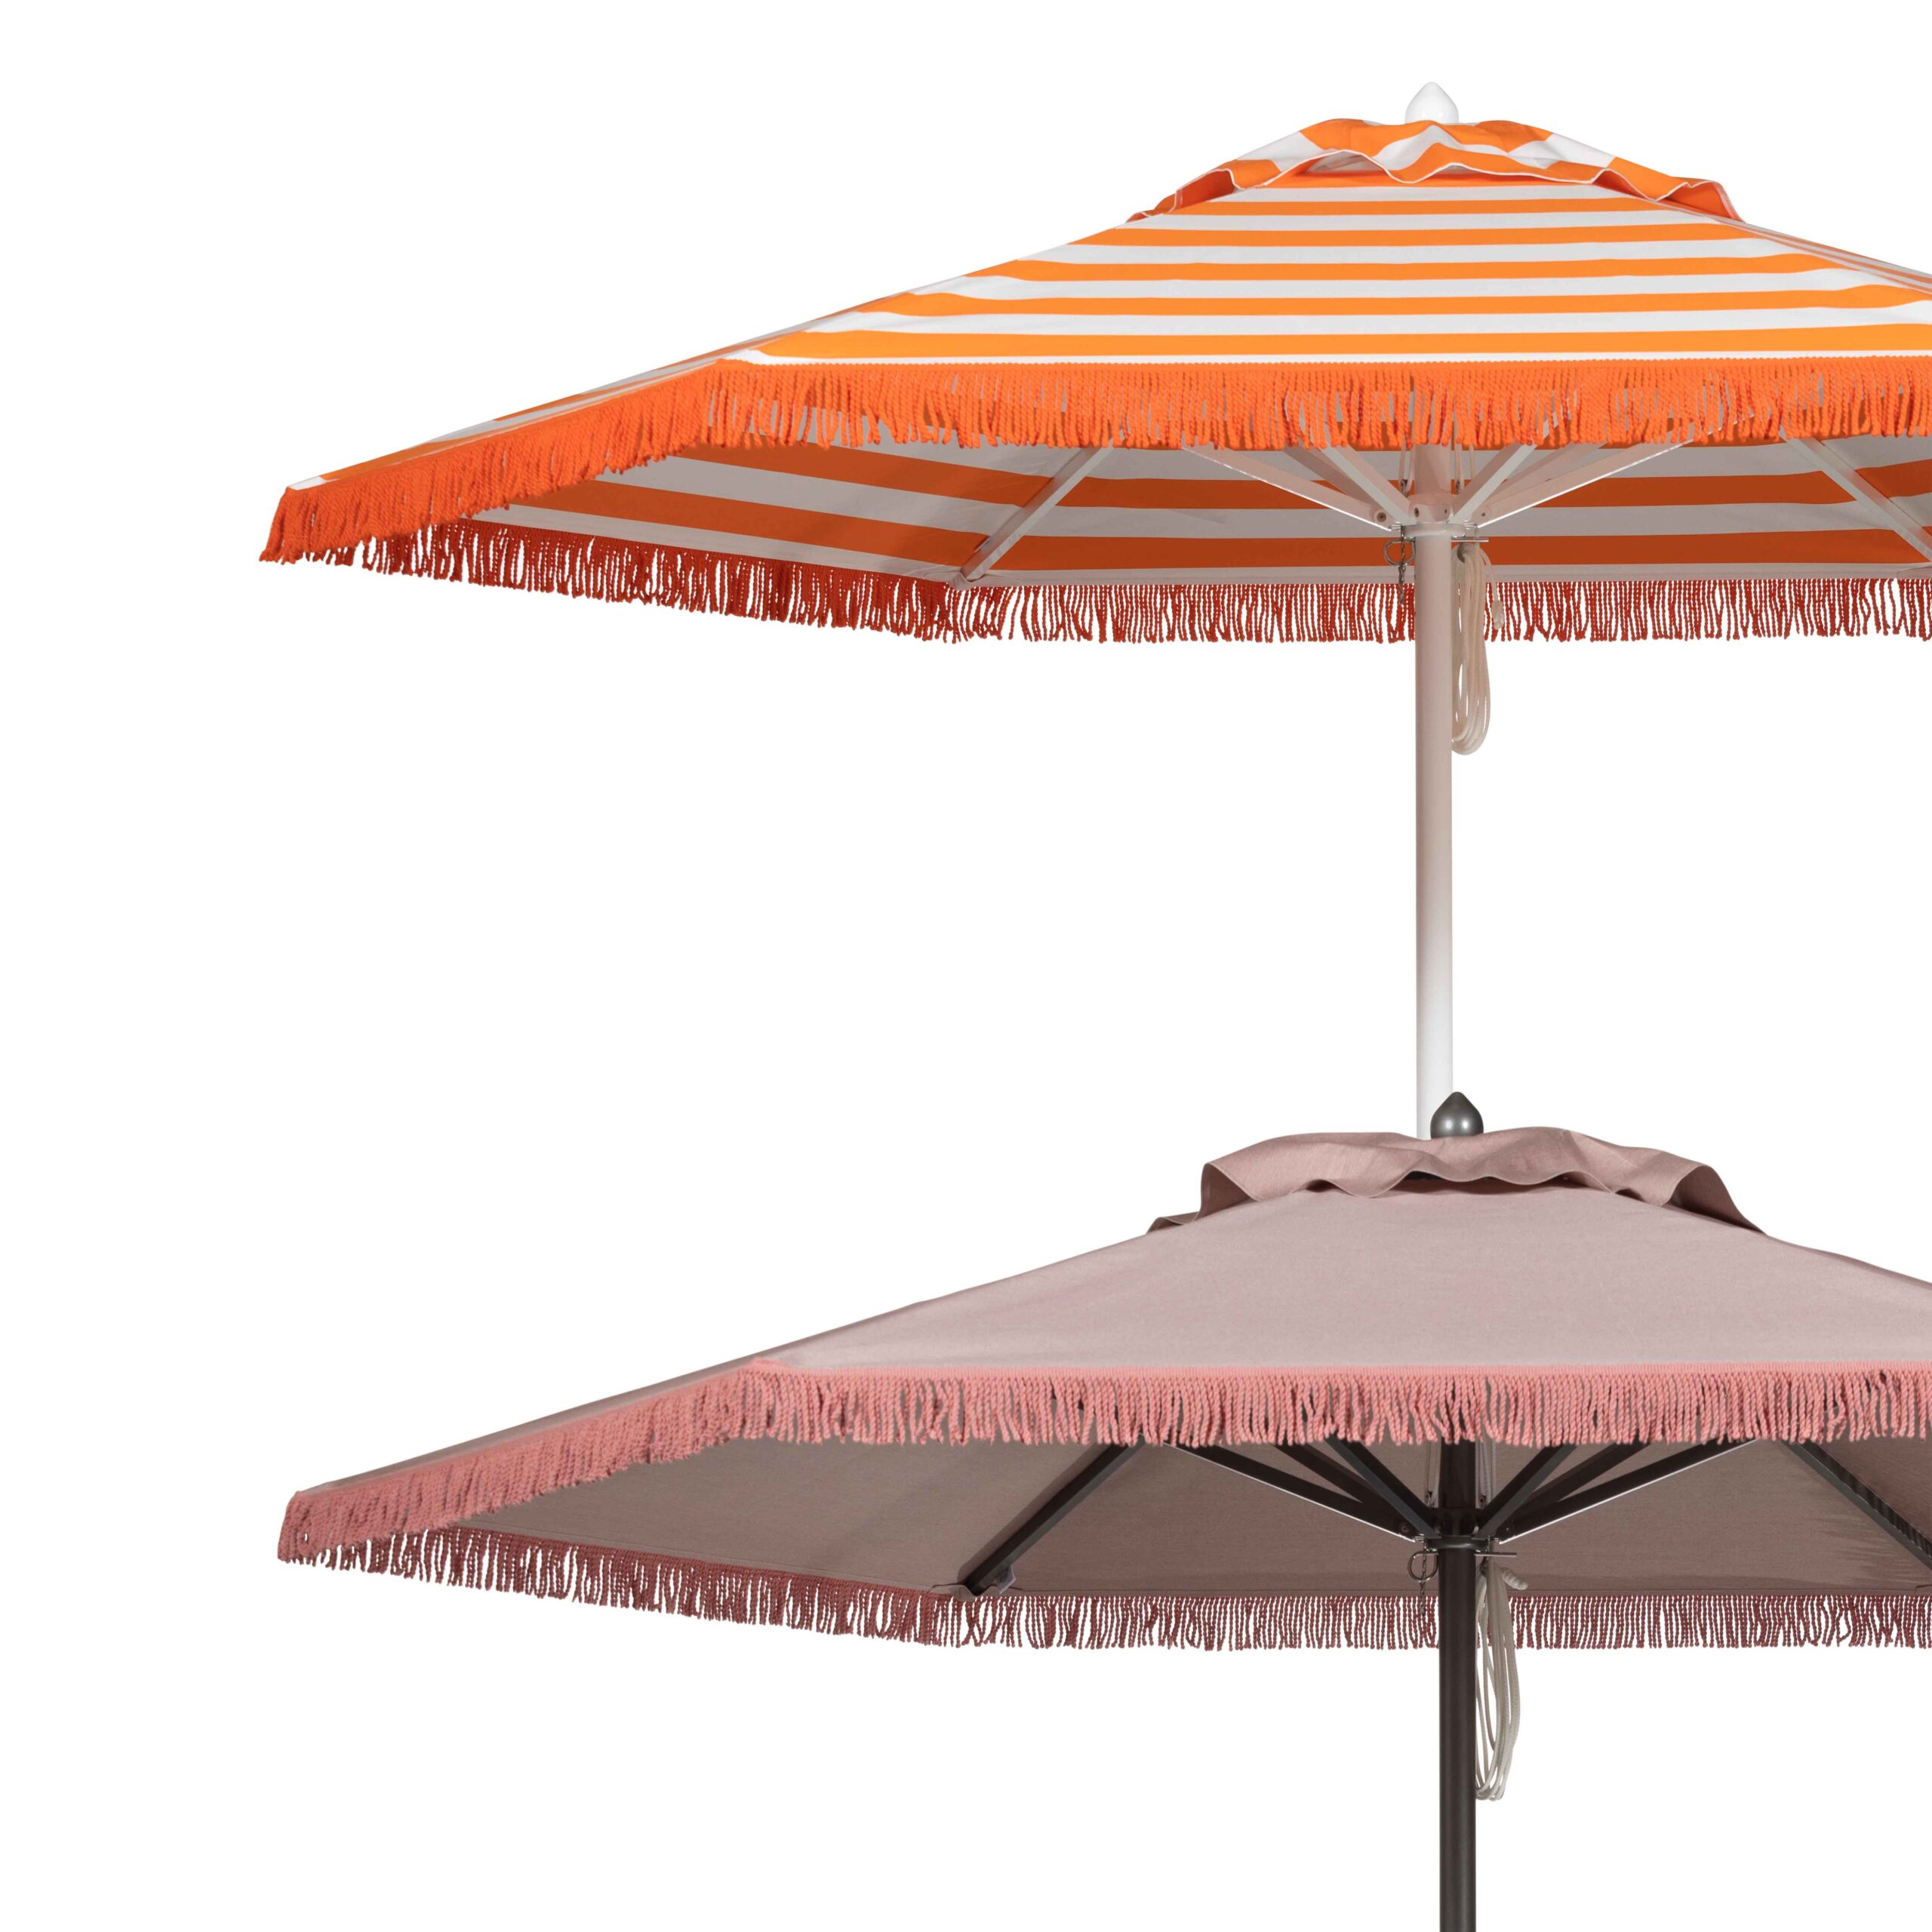 Image of umbrellas with full fringe valance